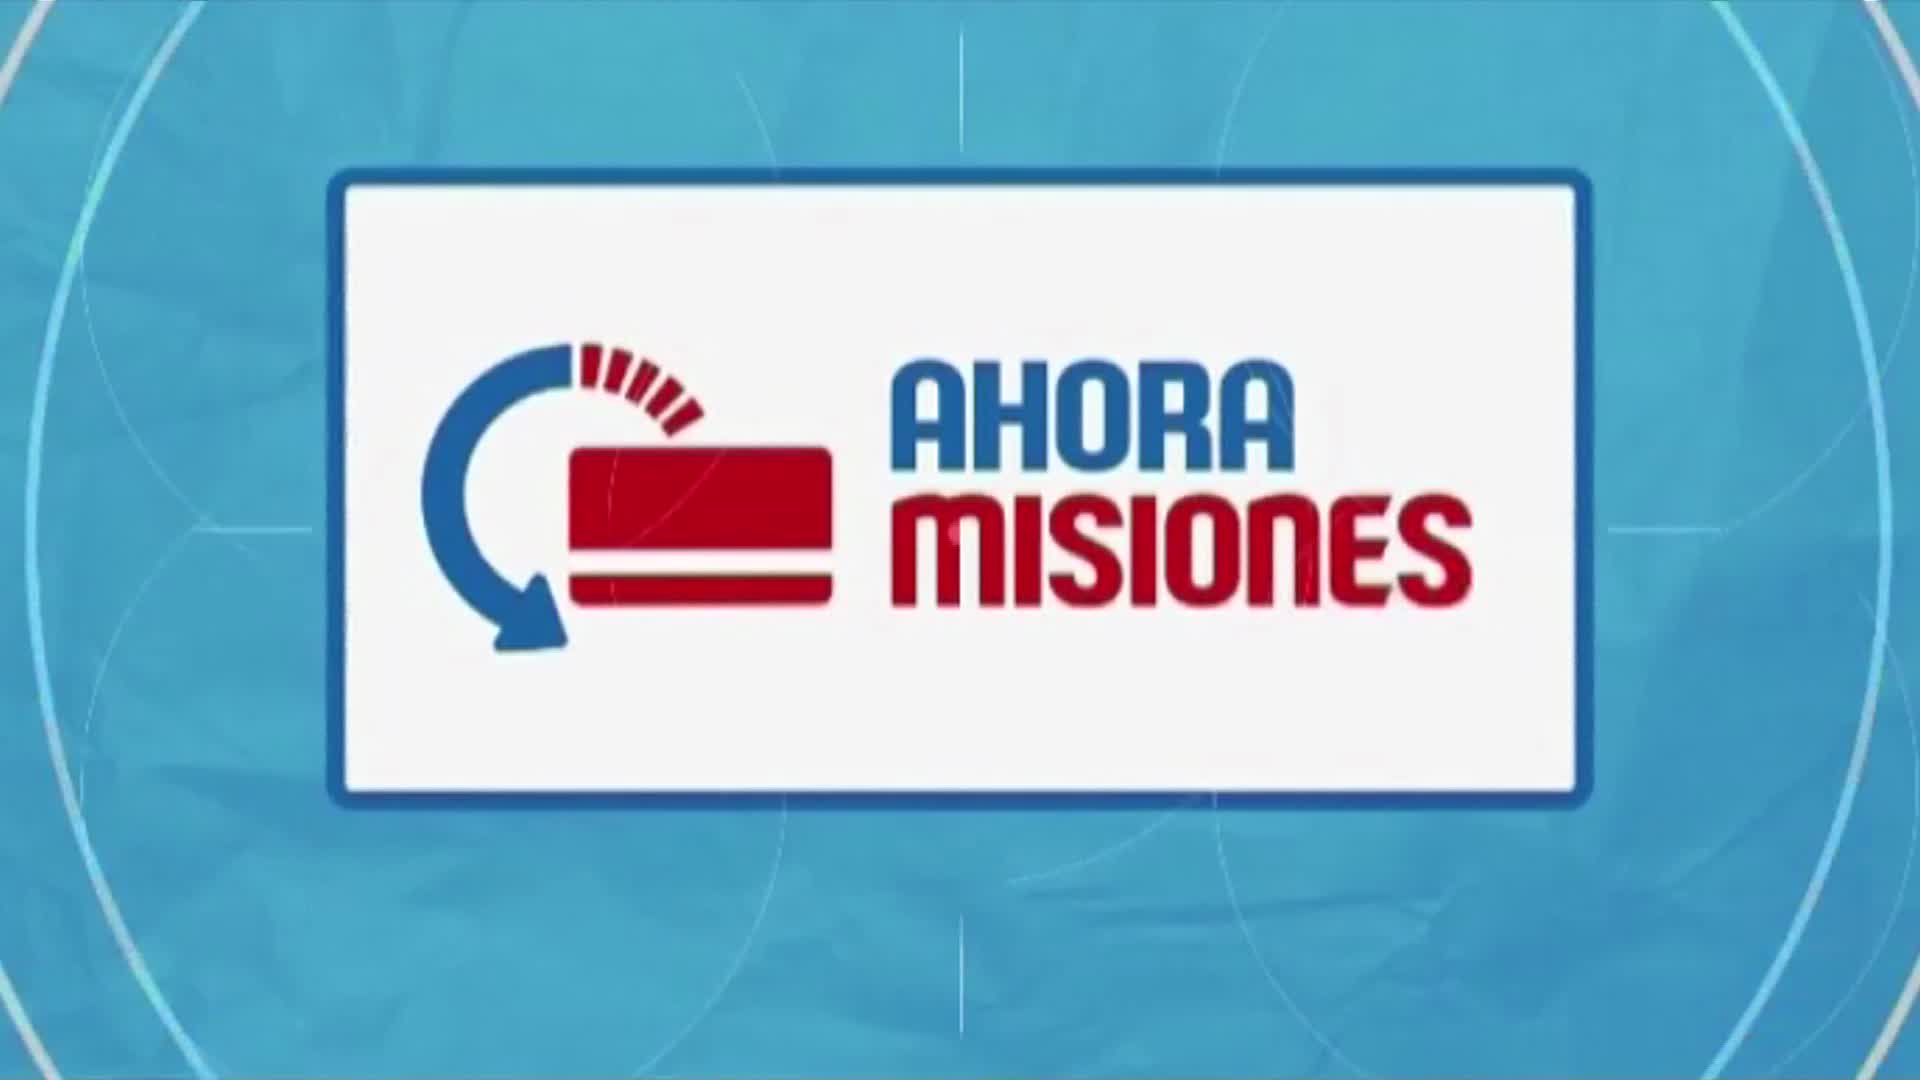 Será de lunes a miércoles: el “Ahora Misiones” se expande a partir de marzo